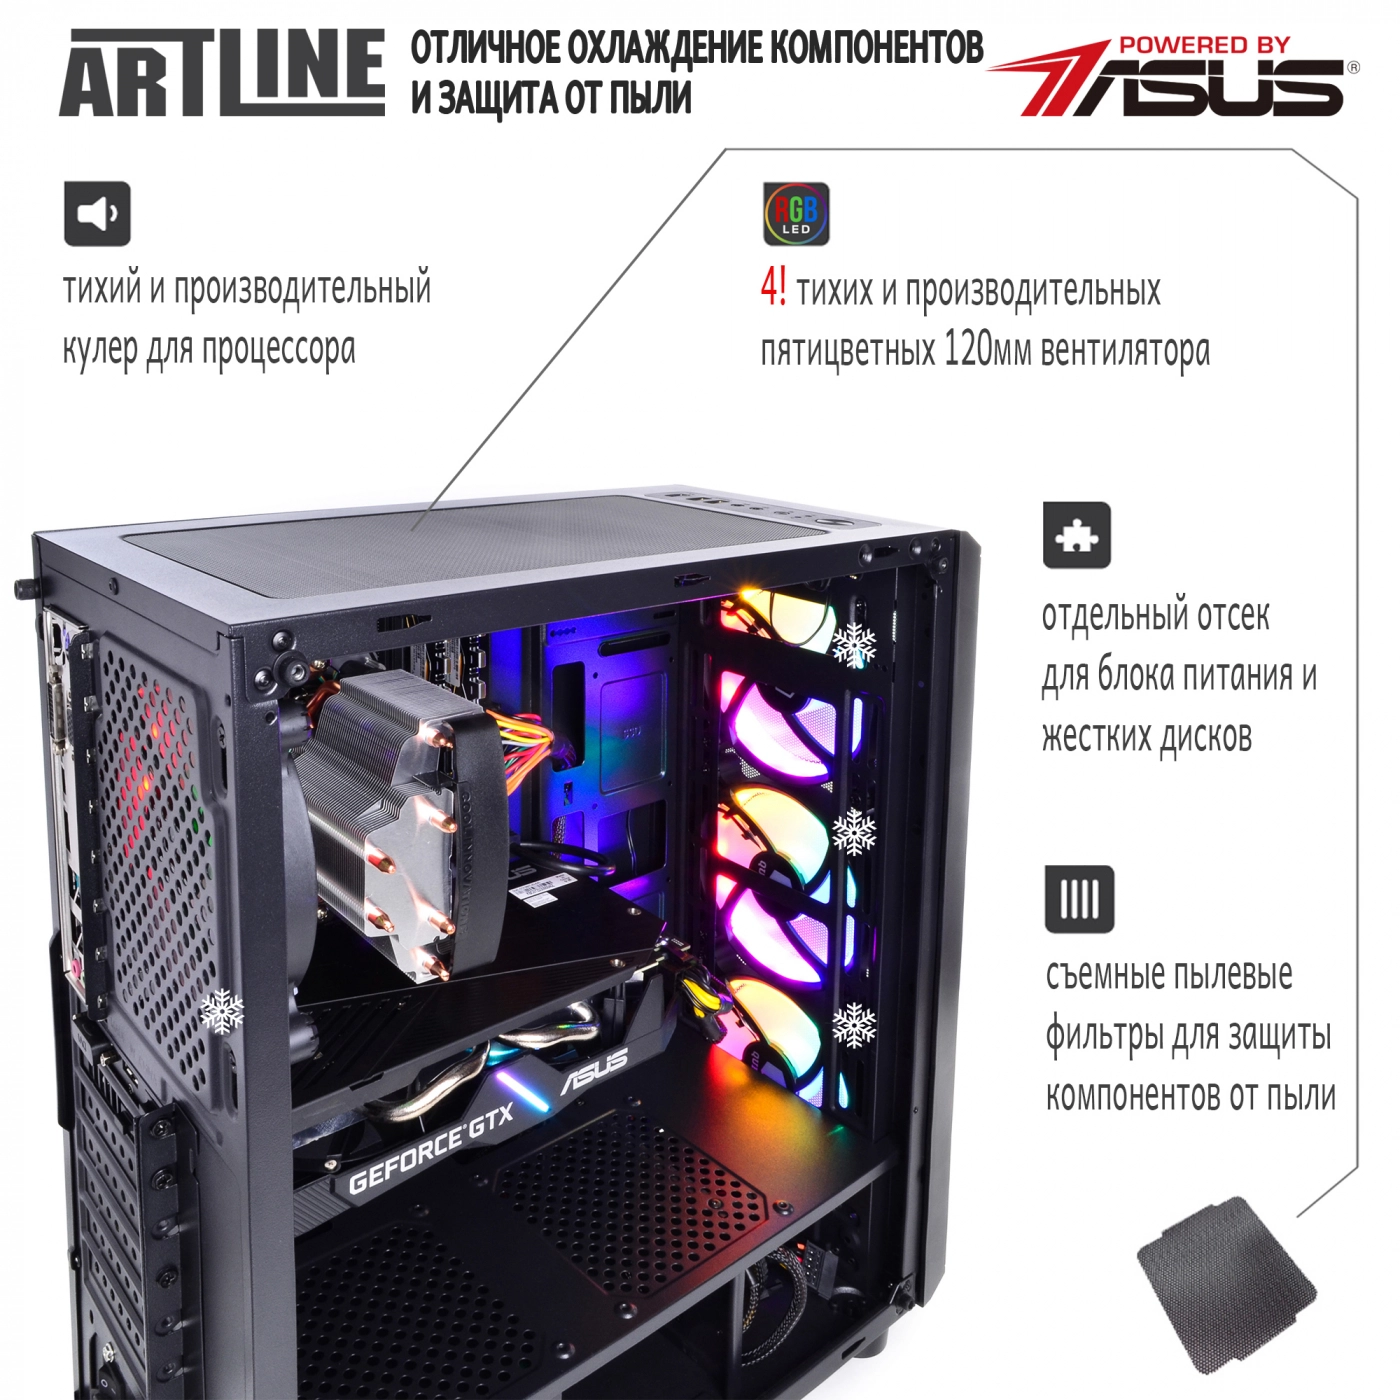 Купить Компьютер ARTLINE Gaming X34v14 - фото 3